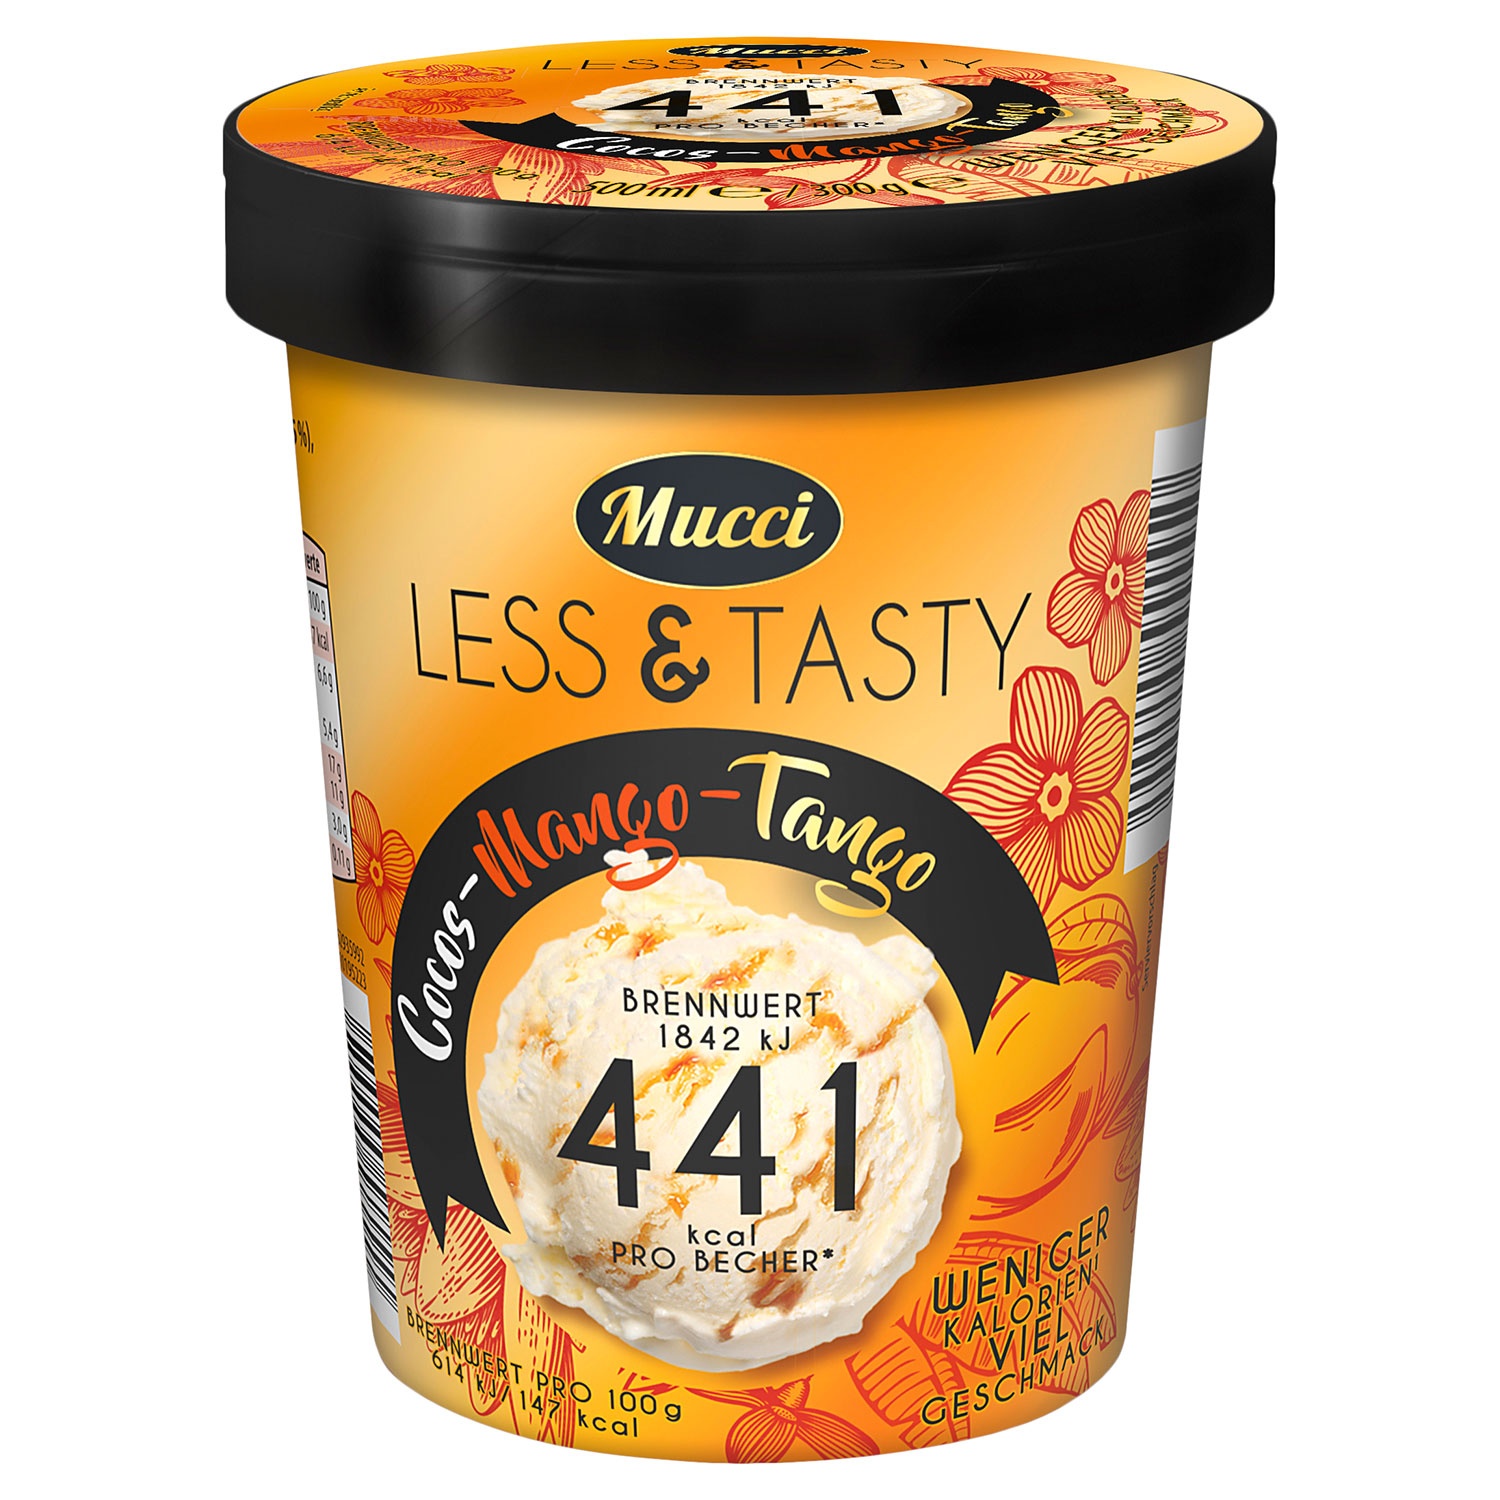 MUCCI Less & Tasty 500 ml